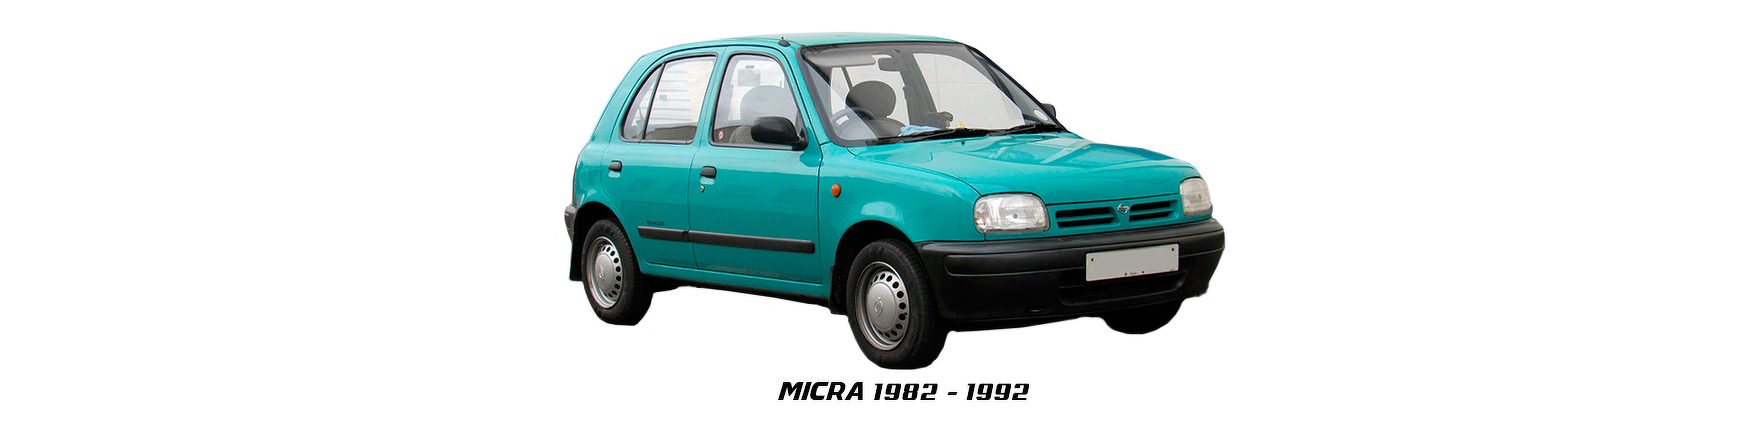 Recambios de Nissan Micra de 1993 a 1998 al mejor precio y con envío.